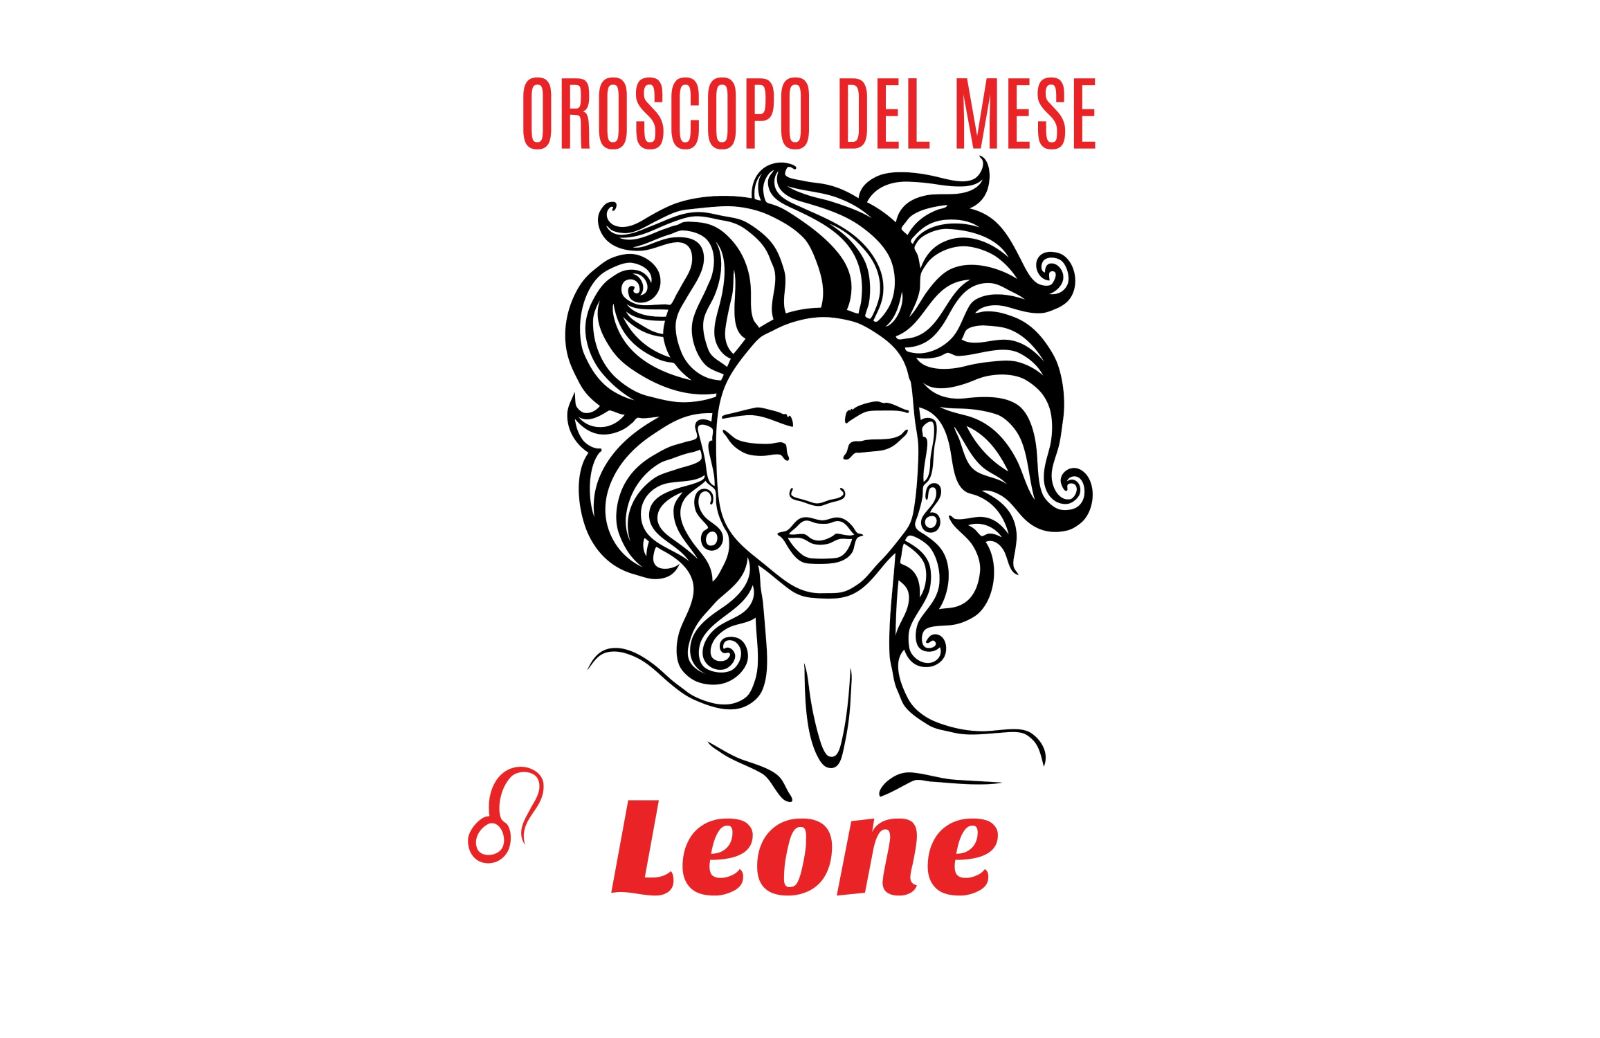 Oroscopo del mese: Leone - dicembre 2018